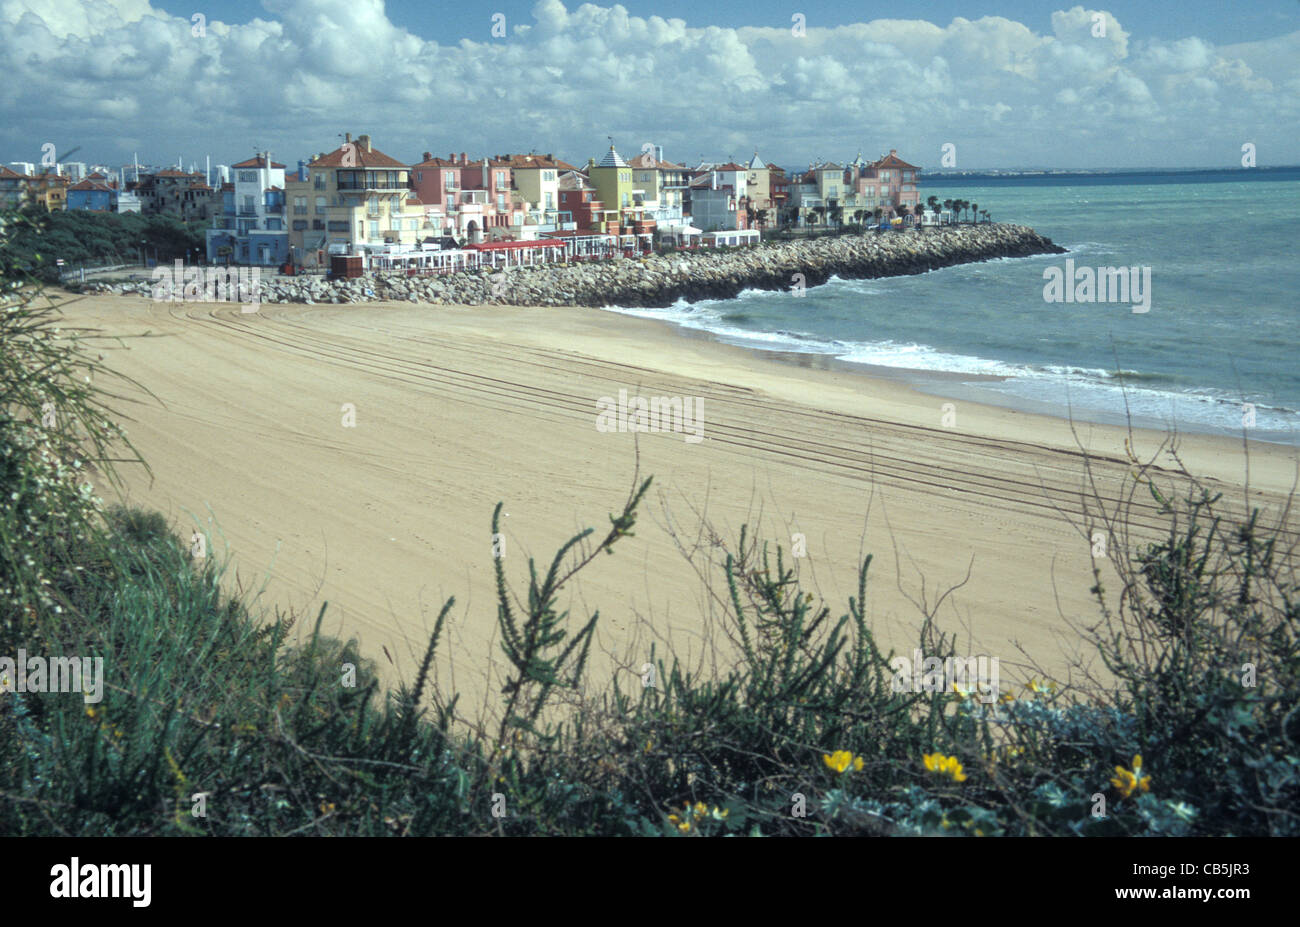 Puerto de Santa Maria, Jerez de la Frontera, Costa de la Luz, Andalucia,  Spain Stock Photo - Alamy